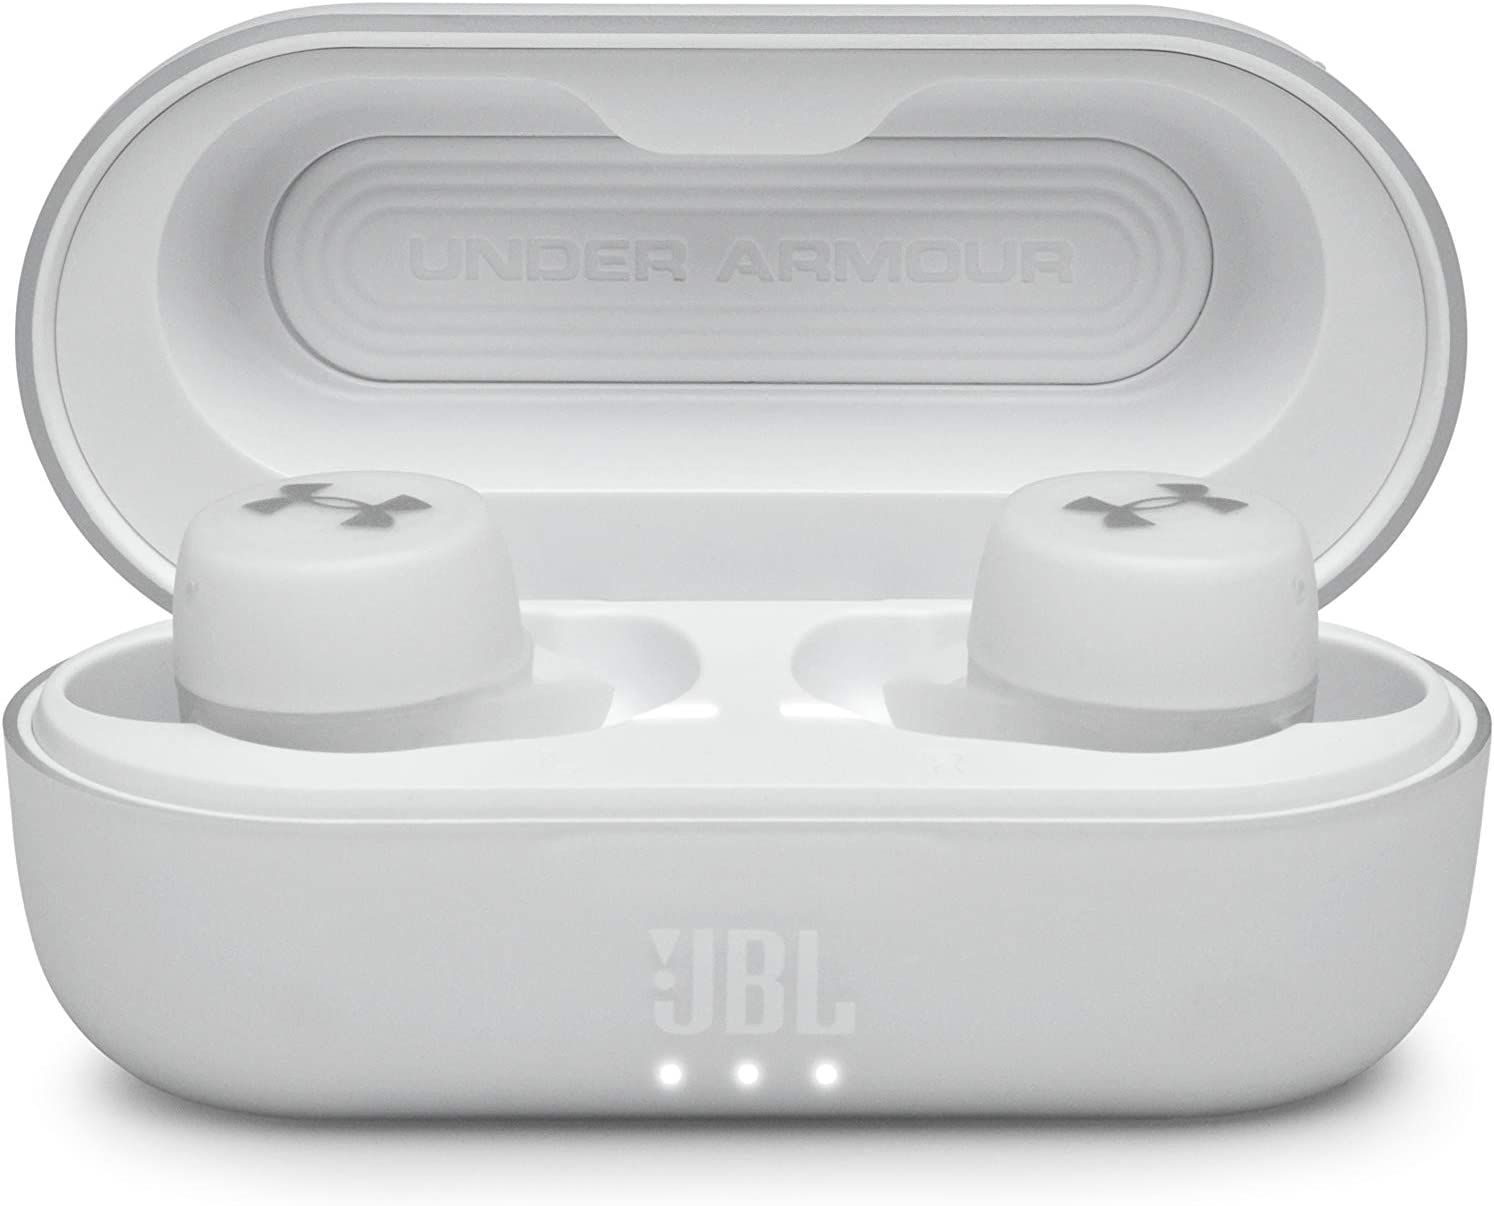 JBL Under Armour UAJBLSTREAKWHTAM-Z True Wireless Streak Headphones White Certified Refurbished